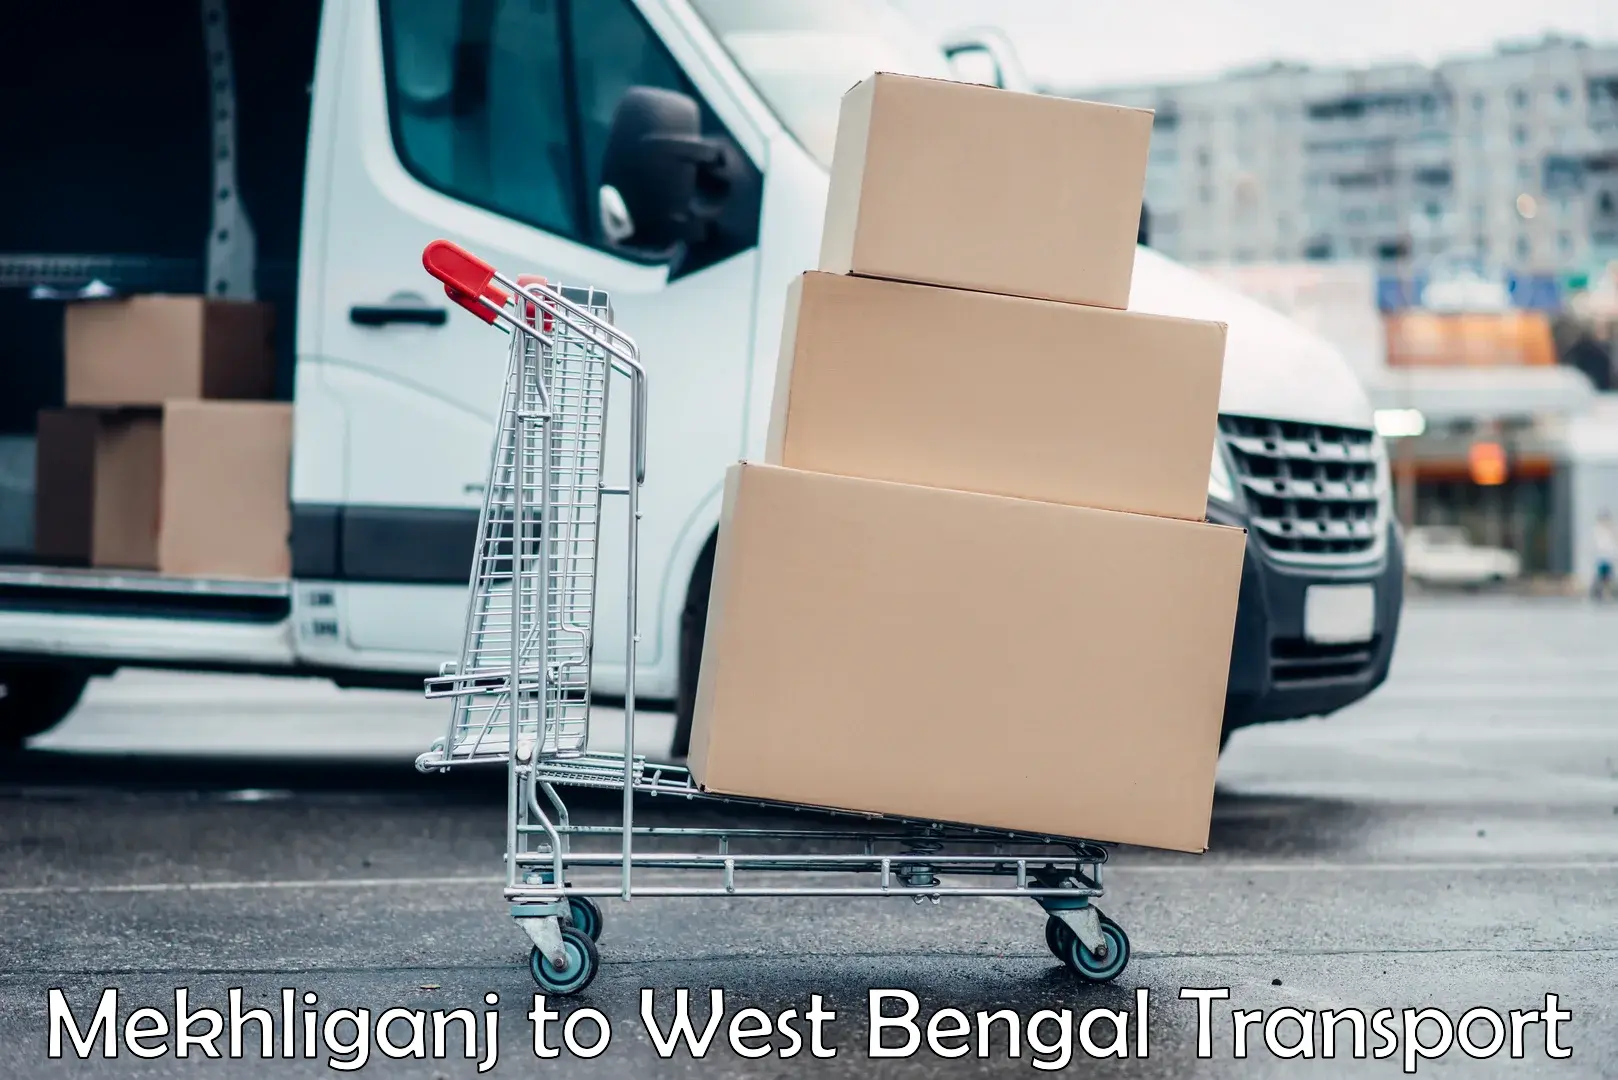 Transport shared services Mekhliganj to West Bengal